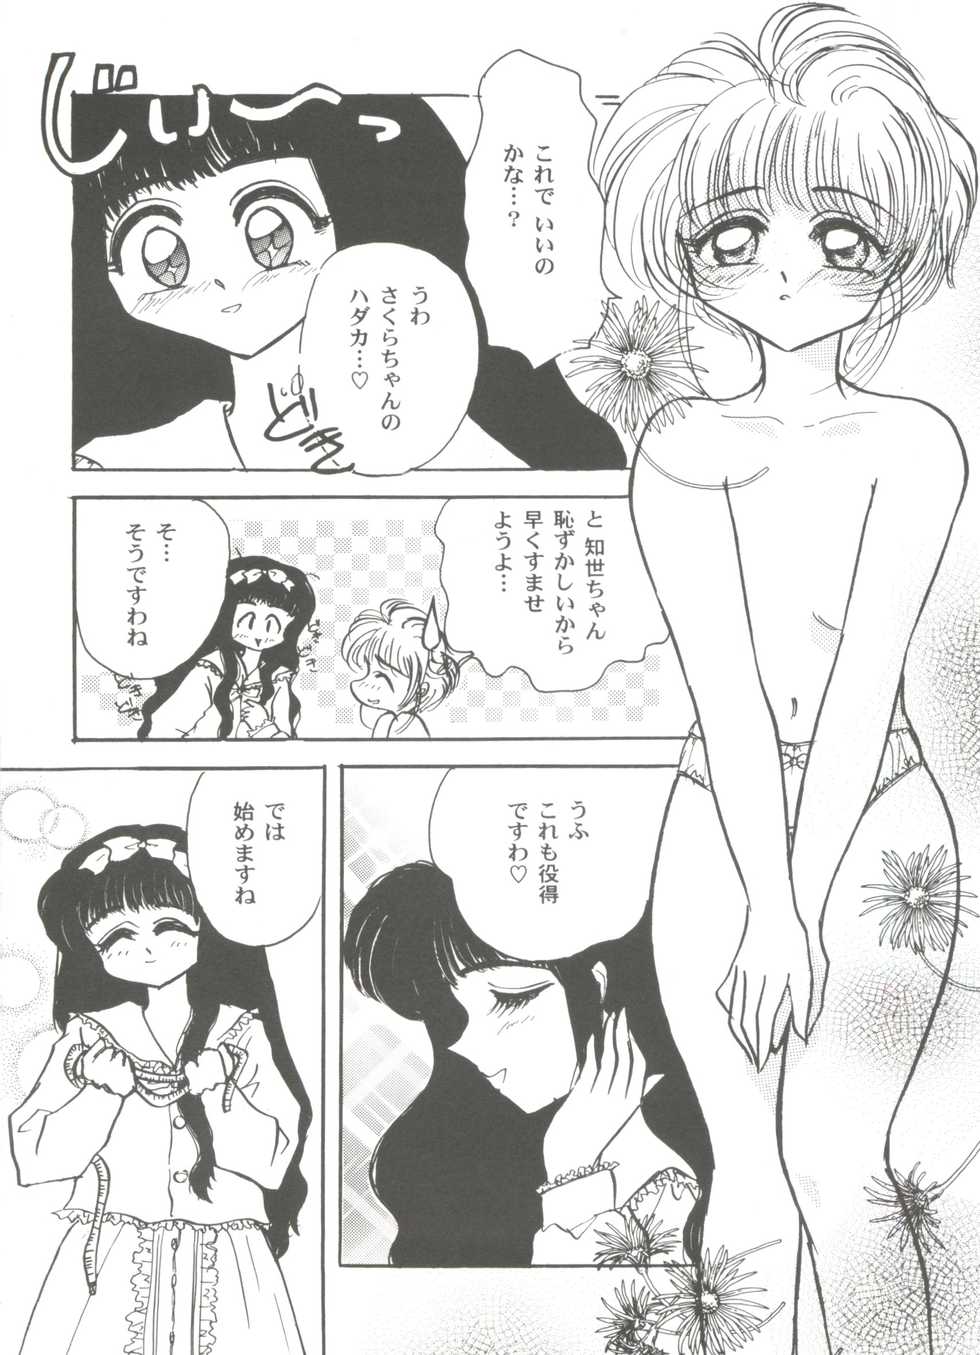 [Anthology] Tomoeda Gakuen File 3 (Cardcaptor Sakura) - Page 38